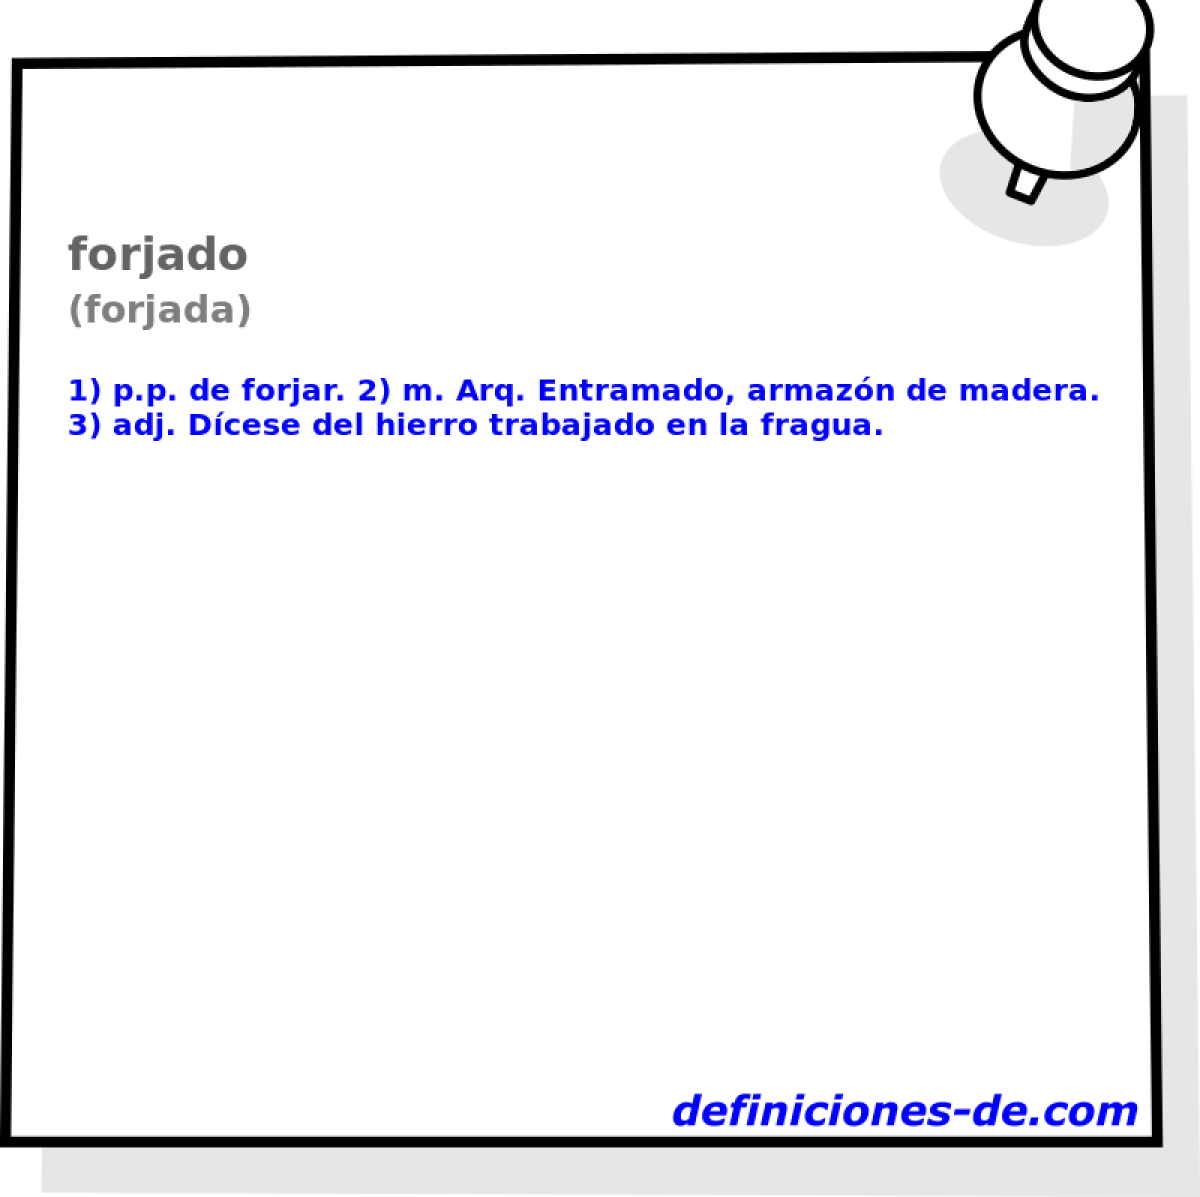 forjado (forjada)